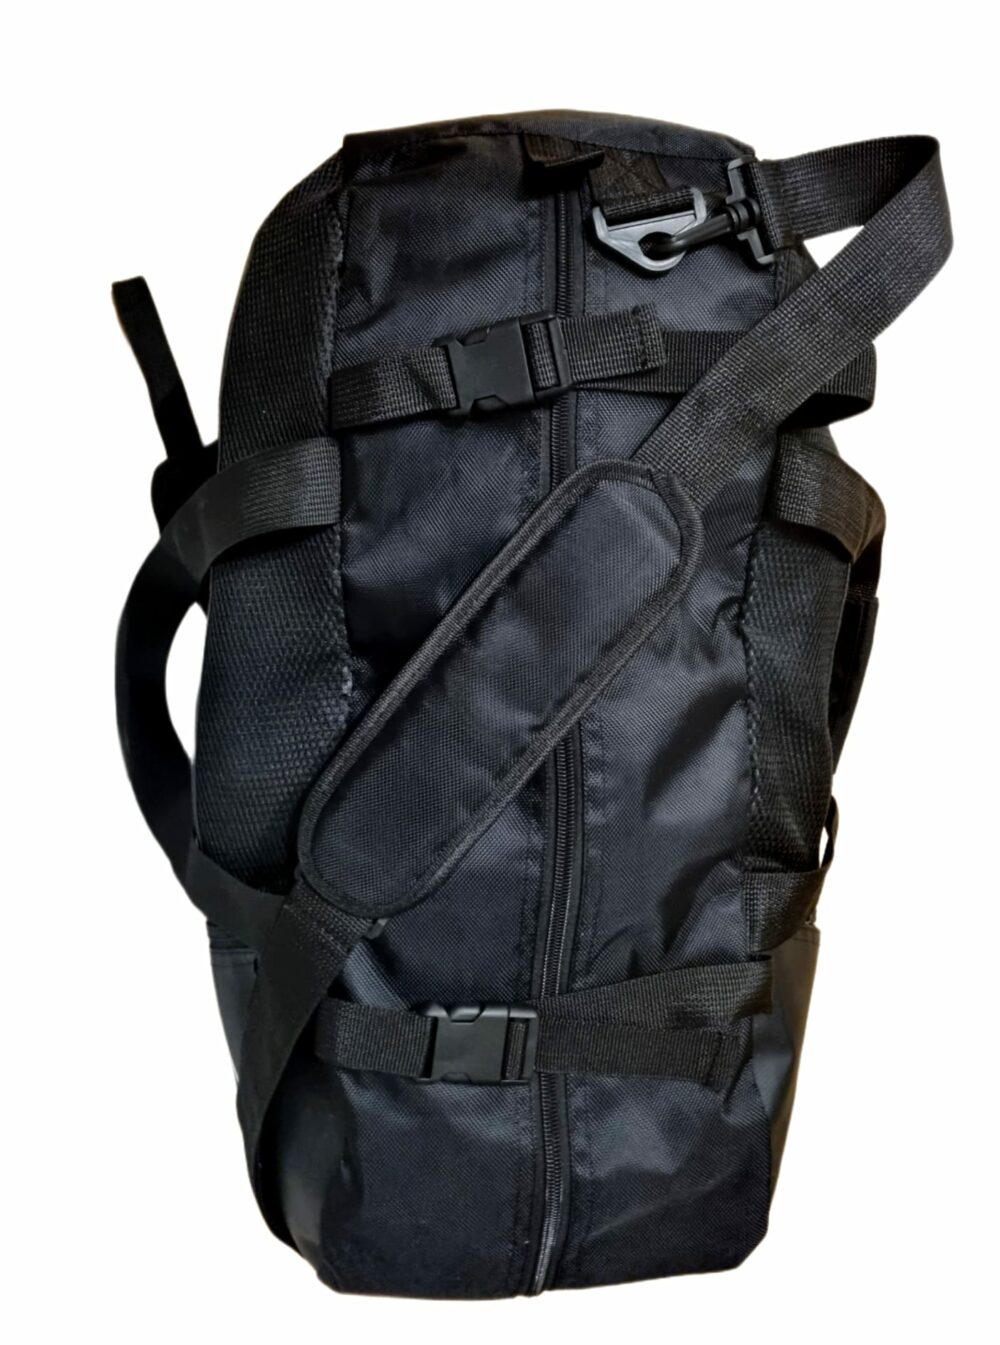 Rucksack Duffle Bag